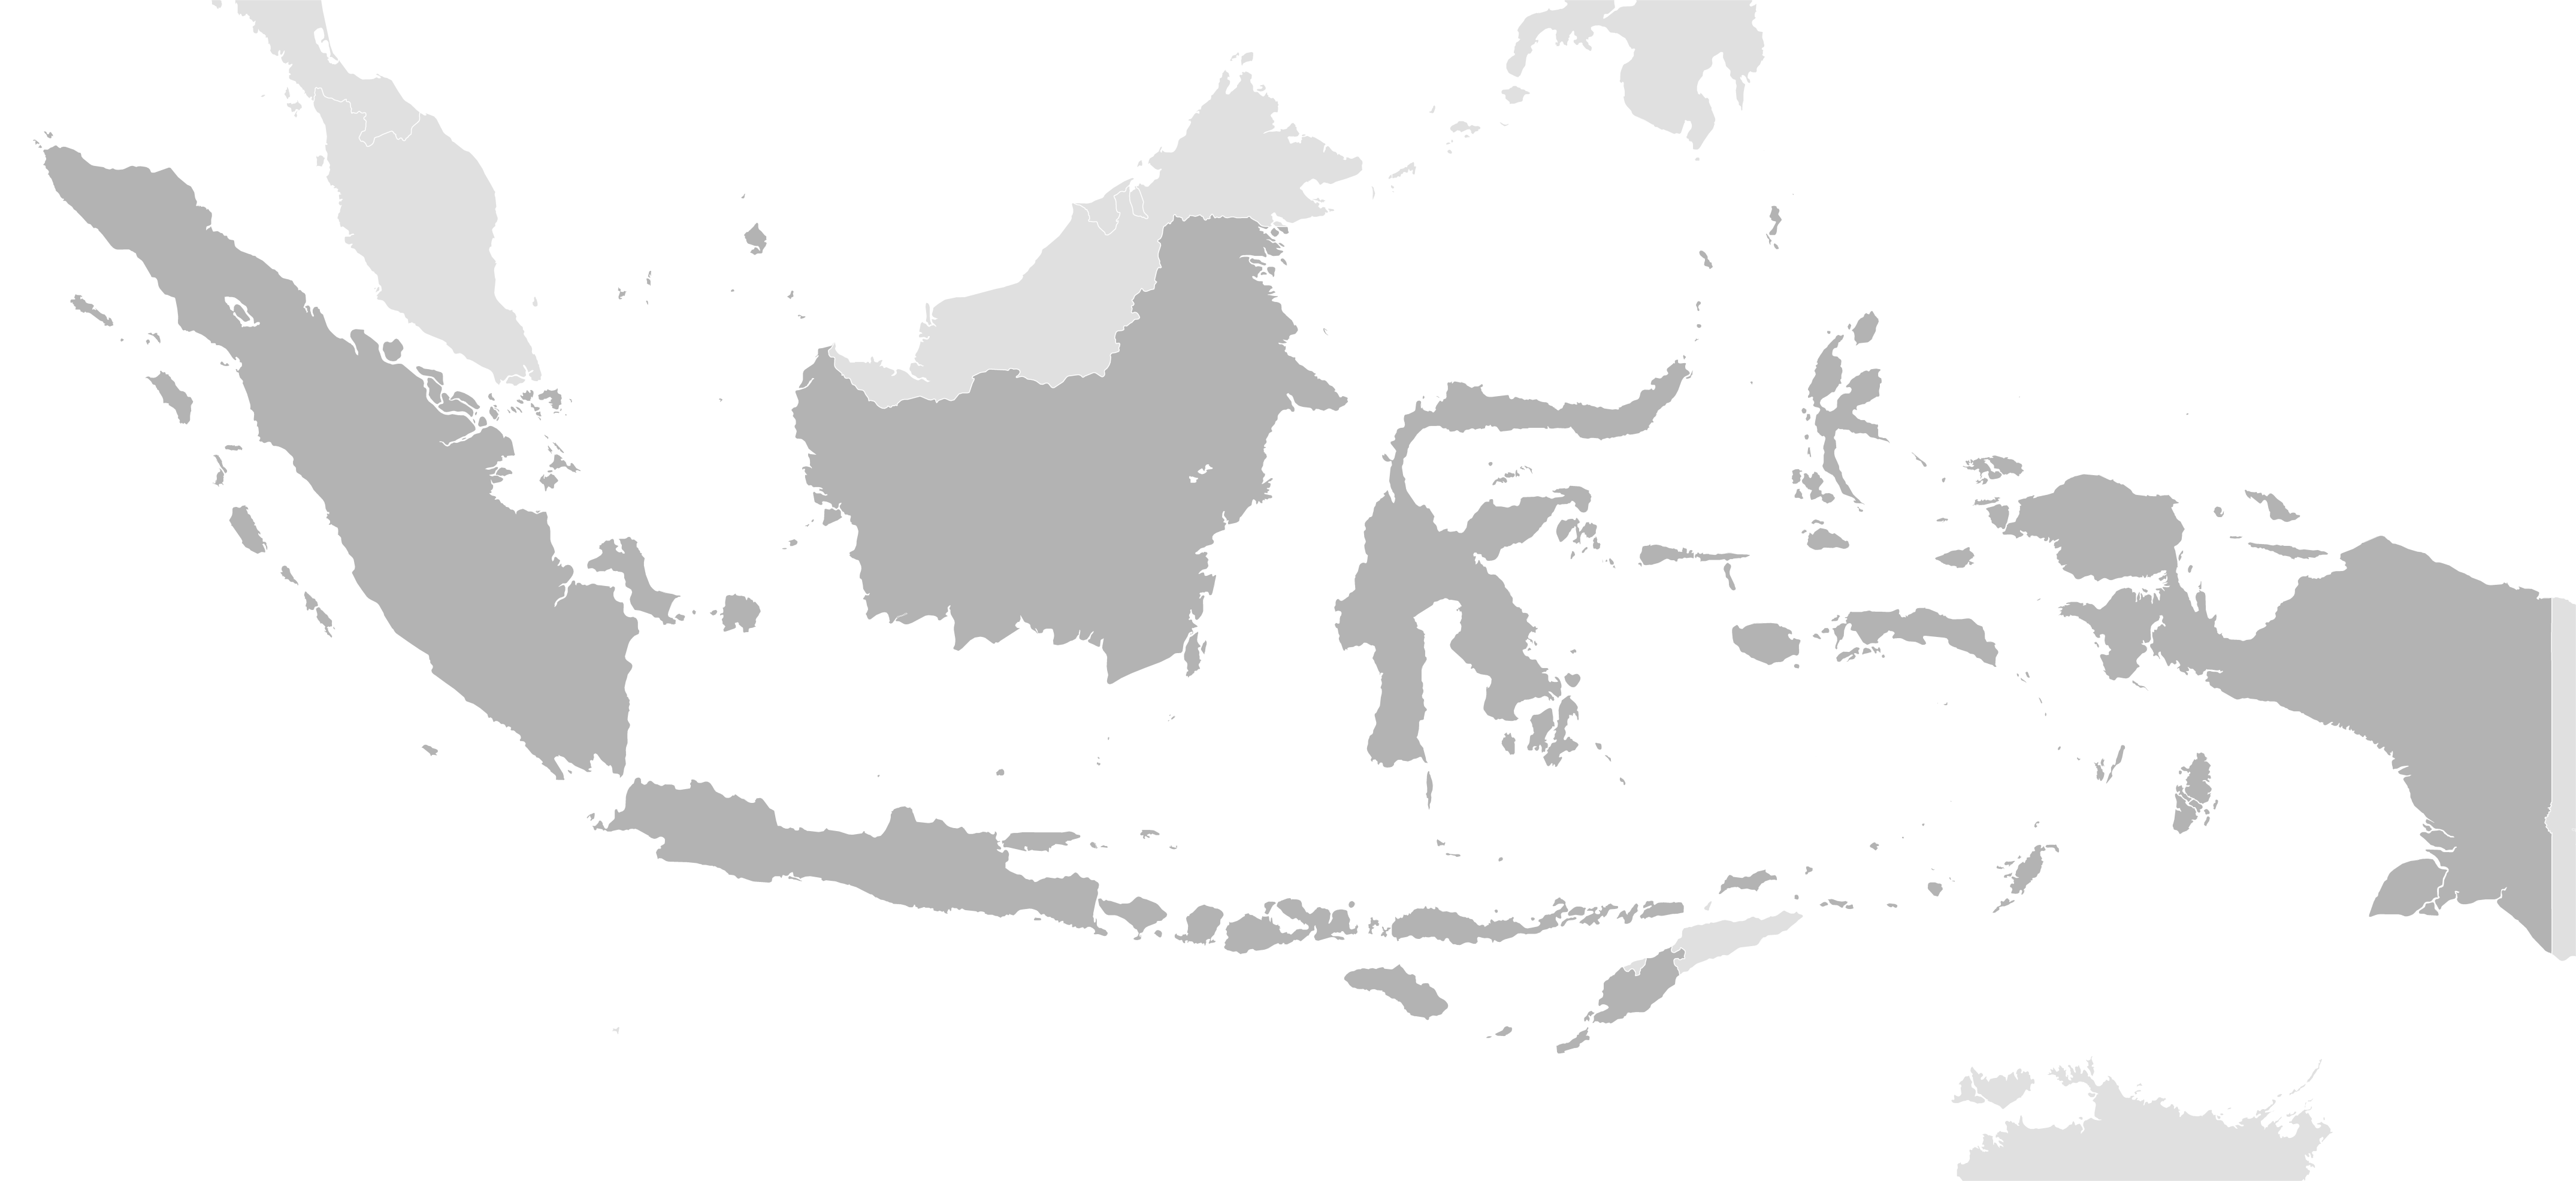 Indonesia Png - KibrisPDR